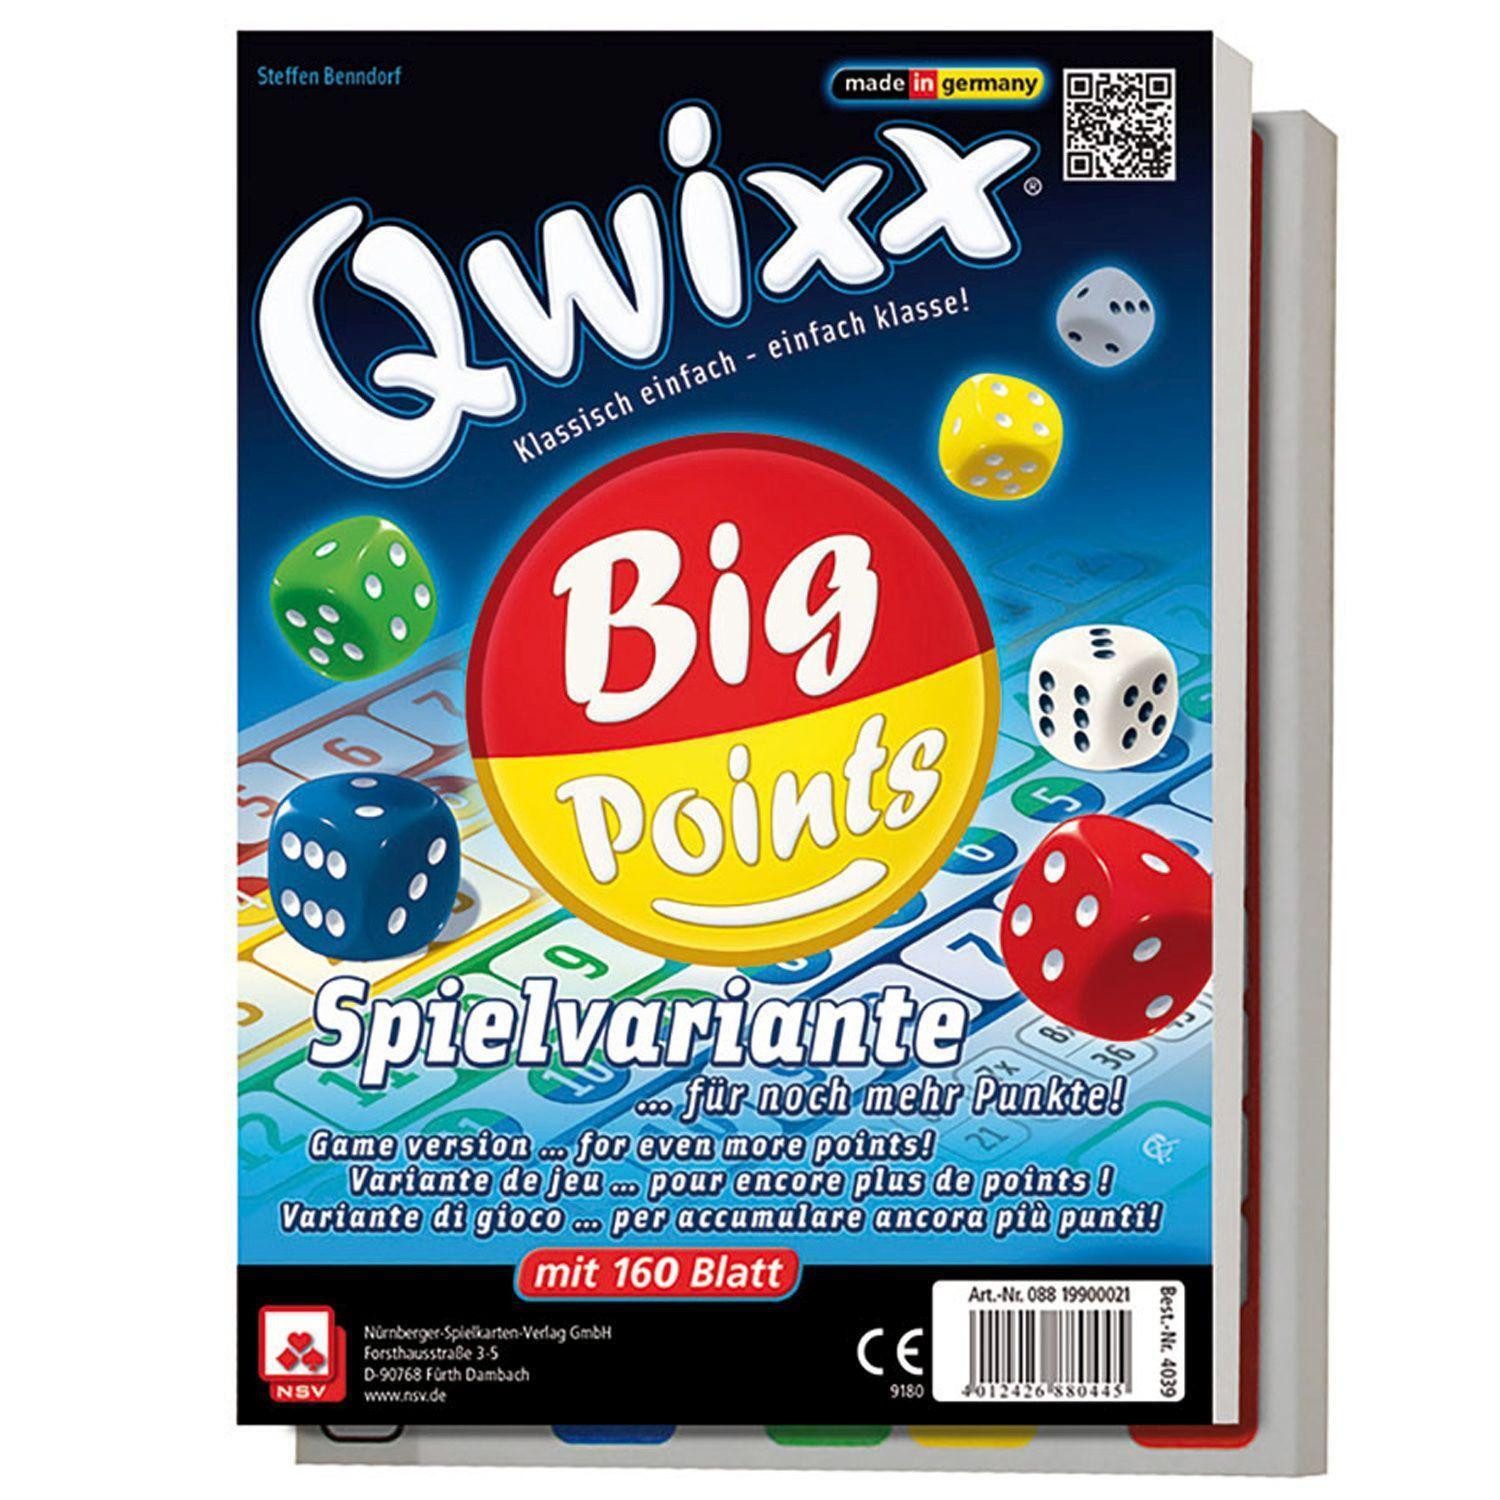 Cartamundi Spiel, Qwixx Big Points